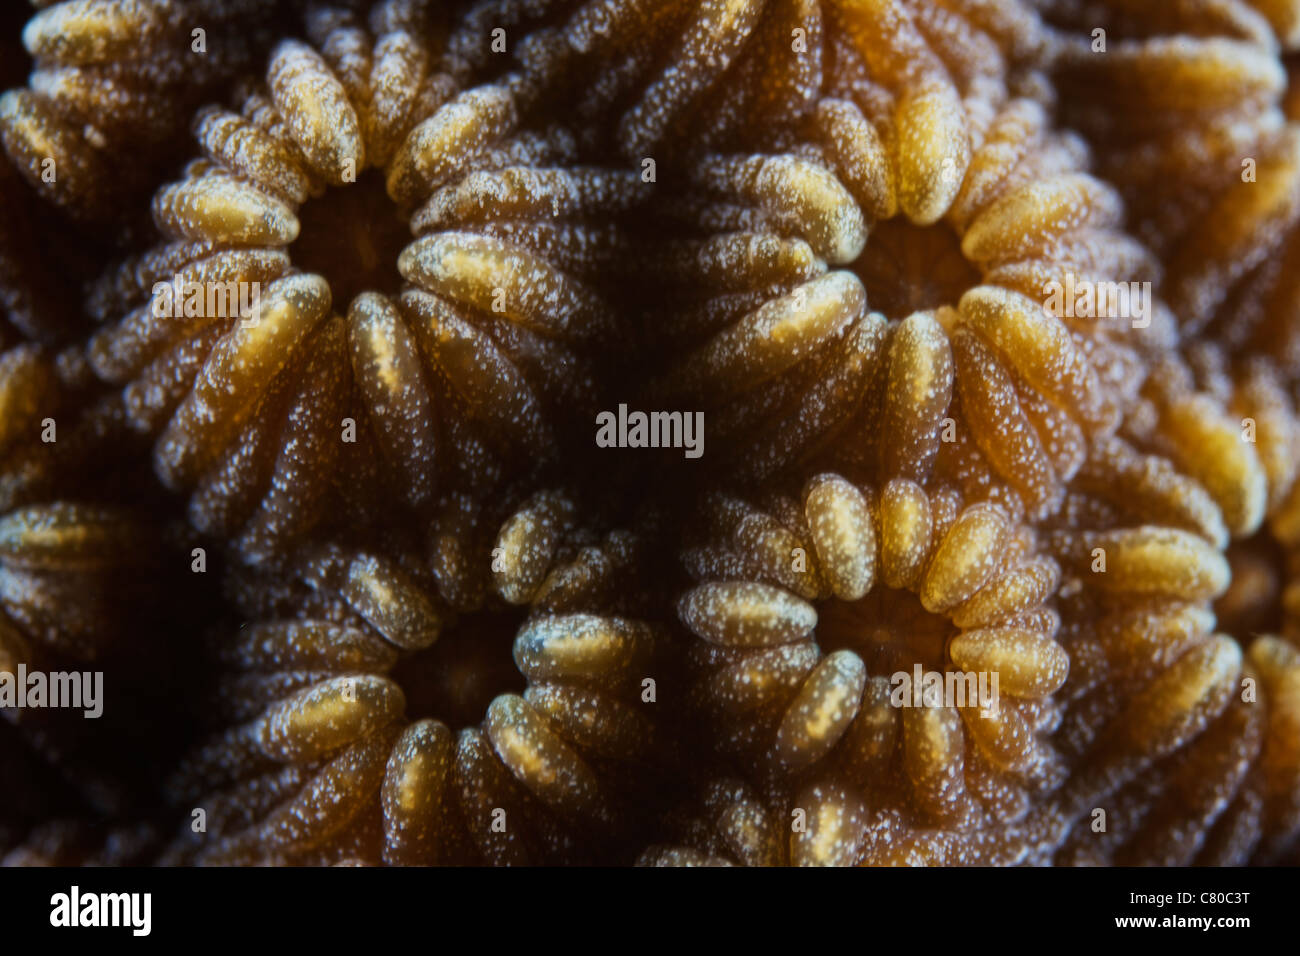 Corallo duro di polipi a 3x la dimensione di vita, Bonaire, Caraibi Paesi Bassi. Foto Stock